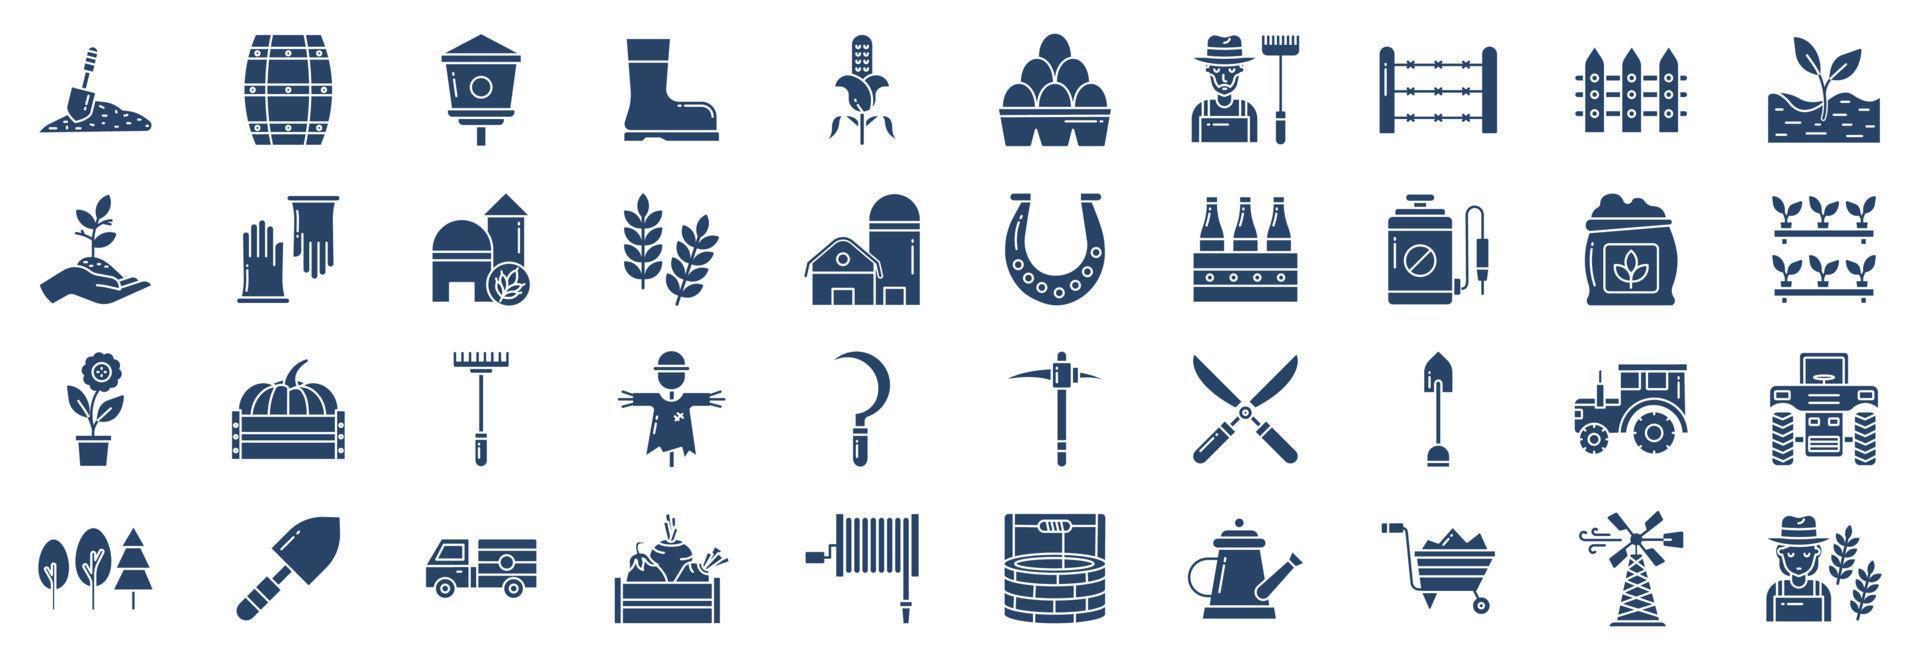 collection d'icônes liées à l'agriculture et à l'agriculture, y compris des icônes comme l'agriculteur, la serre, la plante, les pesticides et plus encore. illustrations vectorielles, ensemble parfait de pixels vecteur